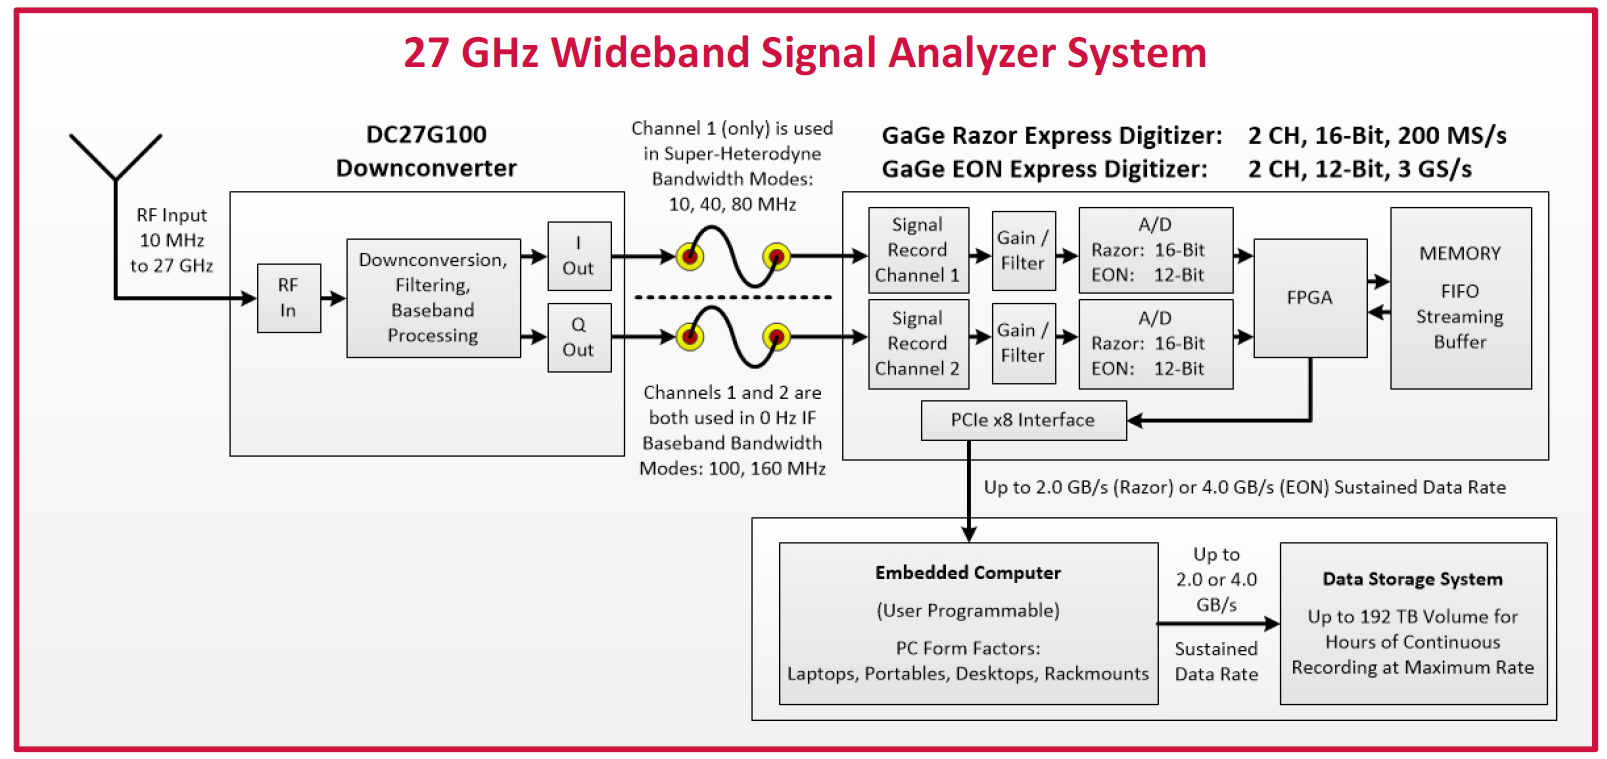 Durch die Kombination der Downconverter-Modelle mit dem GaGe HighSpeed Digitizern entsteht ein vollständiges Echtzeitsignalaufzeichnungs- und Analysesystem mit einer Frequenzabdeckung bis zu 27 GHz.